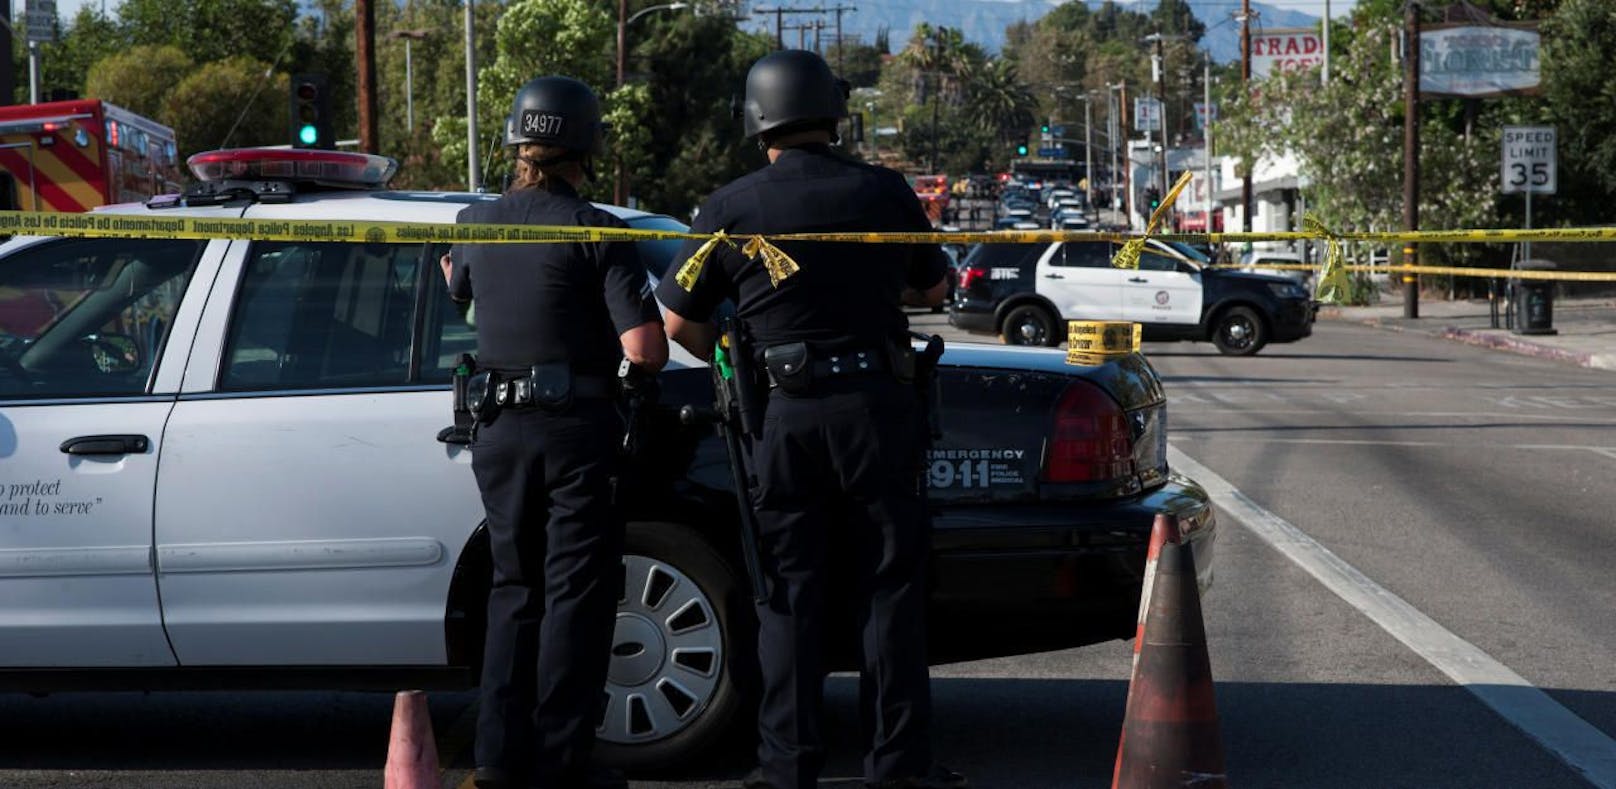 Nahe Los Angeles sind Schüsse gefallen. Die Polizei berichtet von mehreren Opfern.